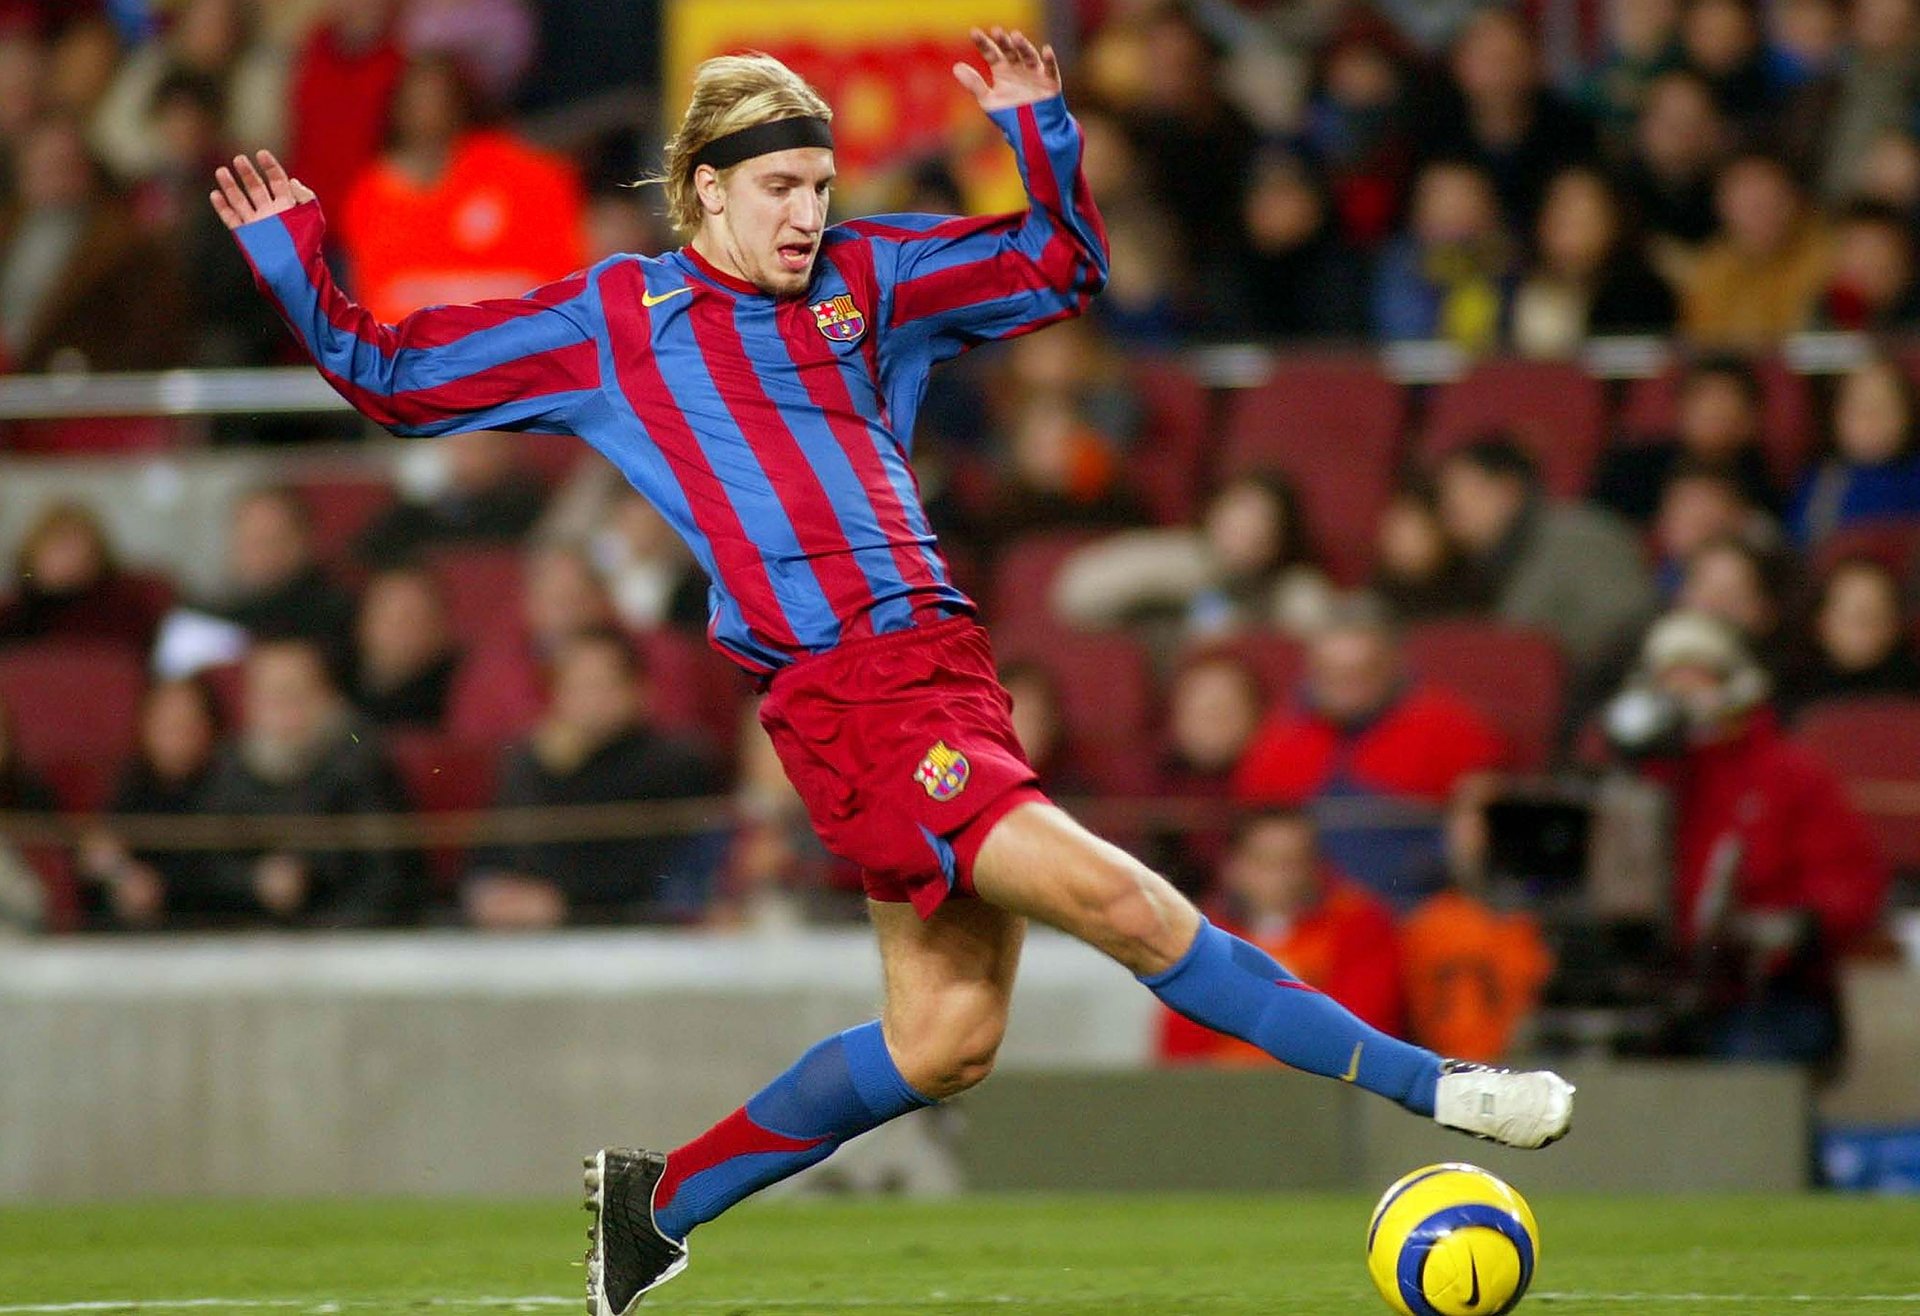 Llegó a Barcelona tras mostrar un buen rendimiento en River Plate. En enero del 2005 abonaron 6,5 millones por cuatro temporadas y media. Disputó solo una temporada antes de marcharse a préstamo al Mallorca y ser vendido al FC Moscú en 2007 por 2 millones de euros (Getty)